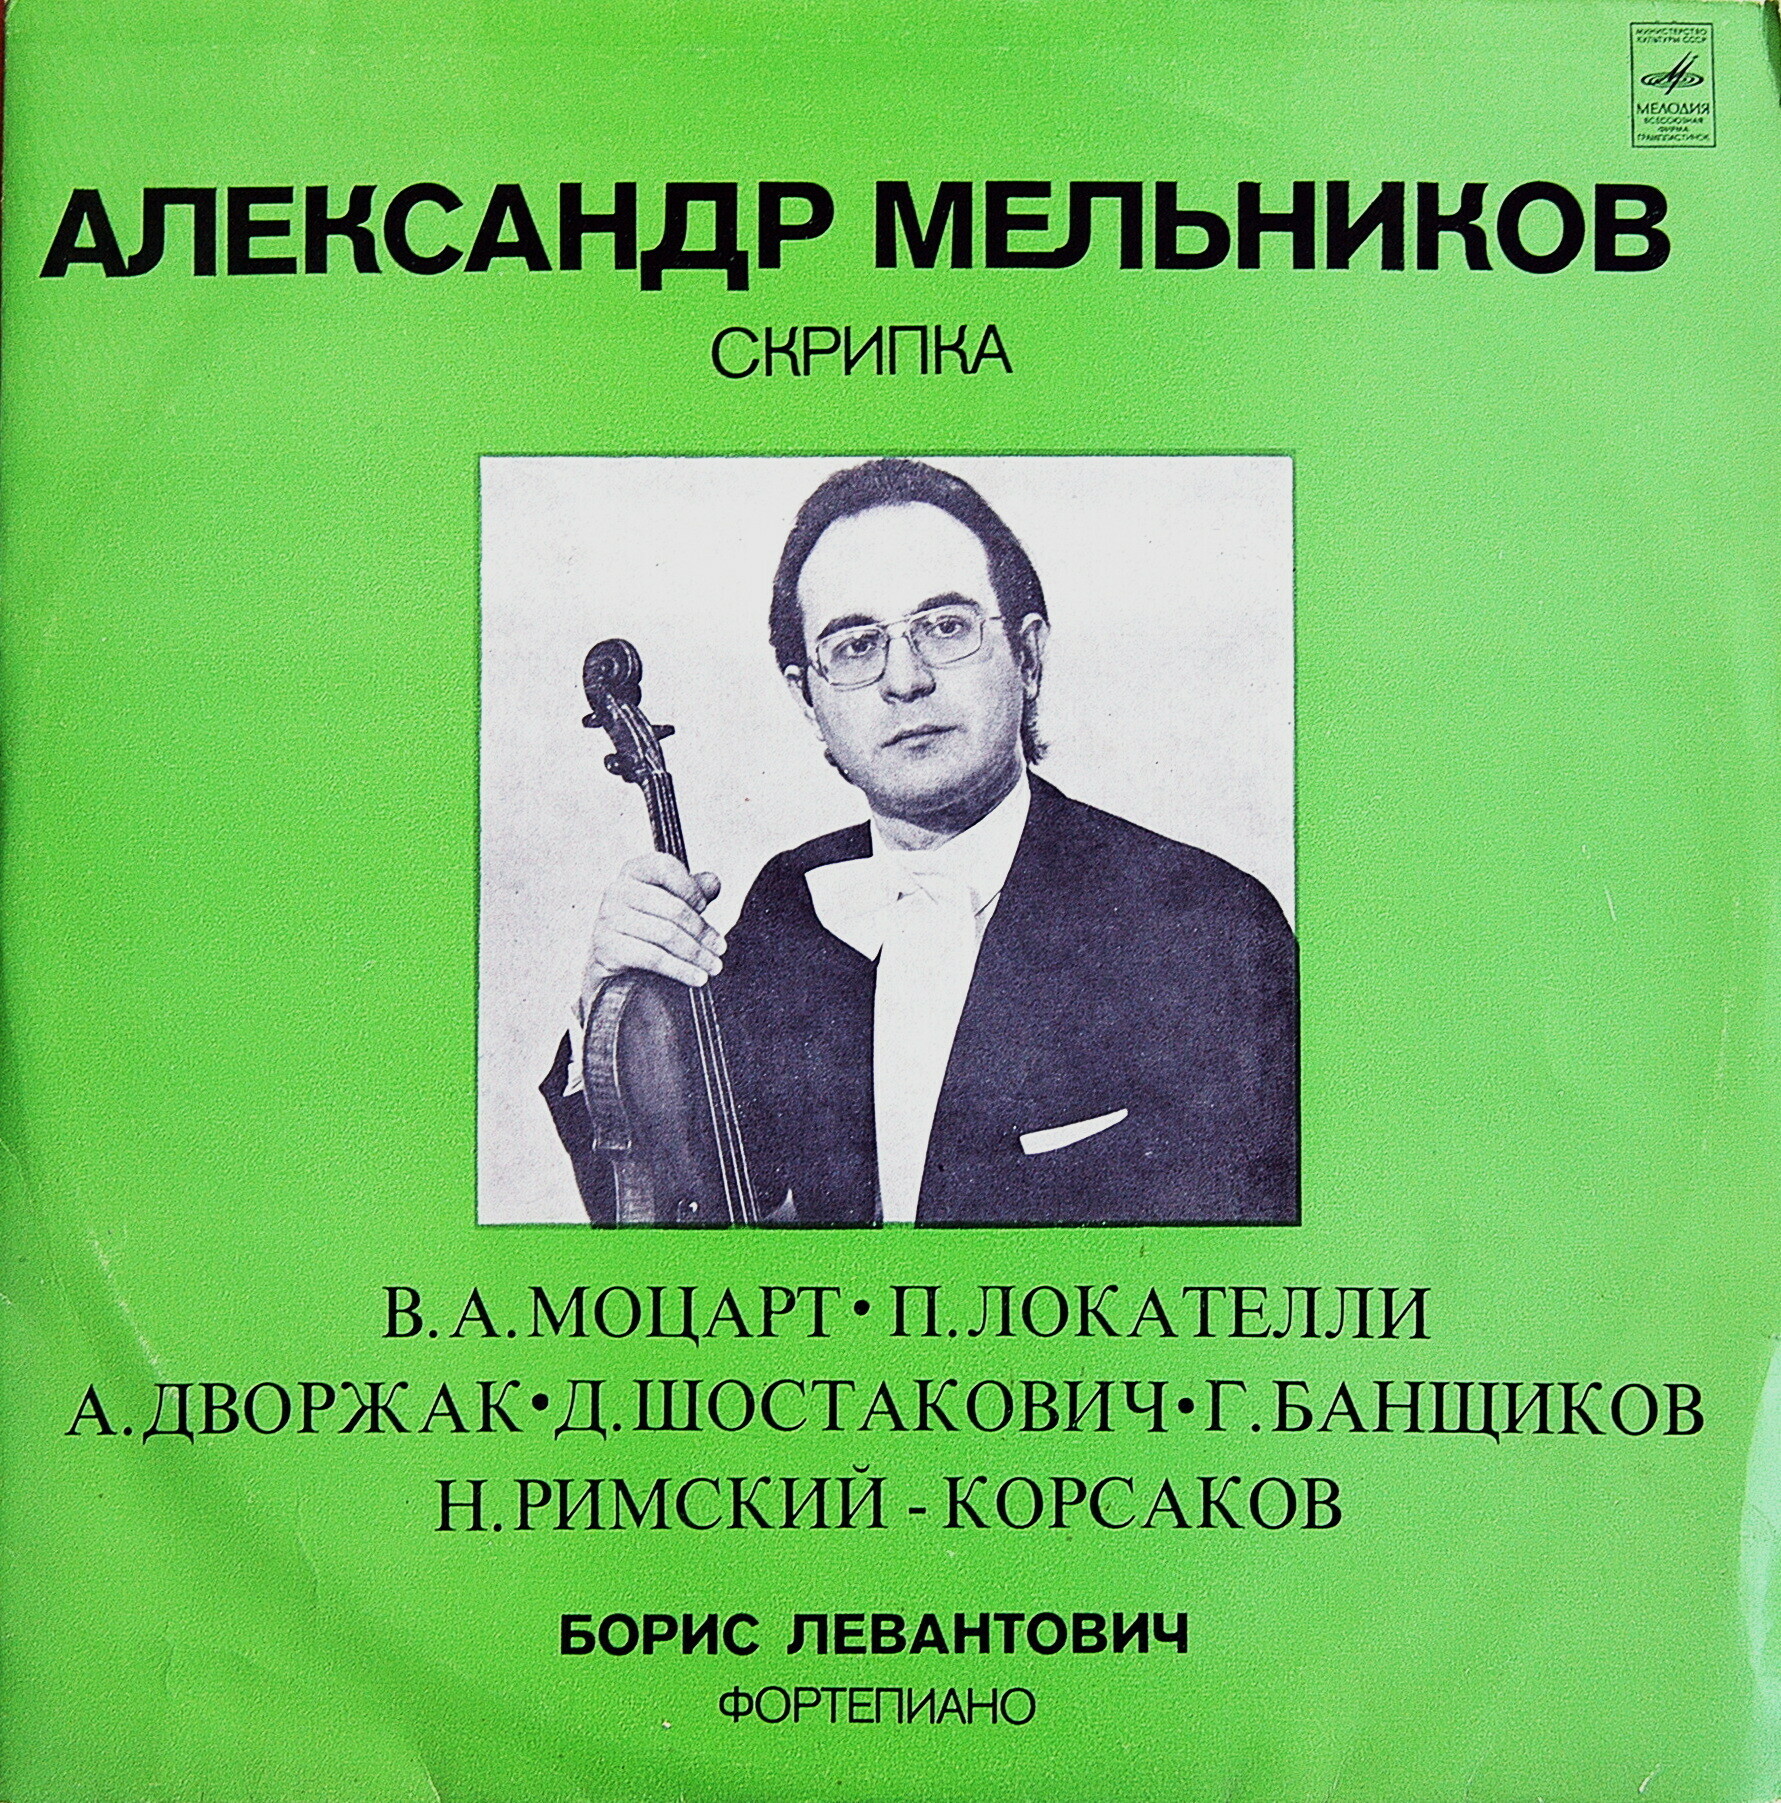 Александр МЕЛЬНИКОВ (скрипка)